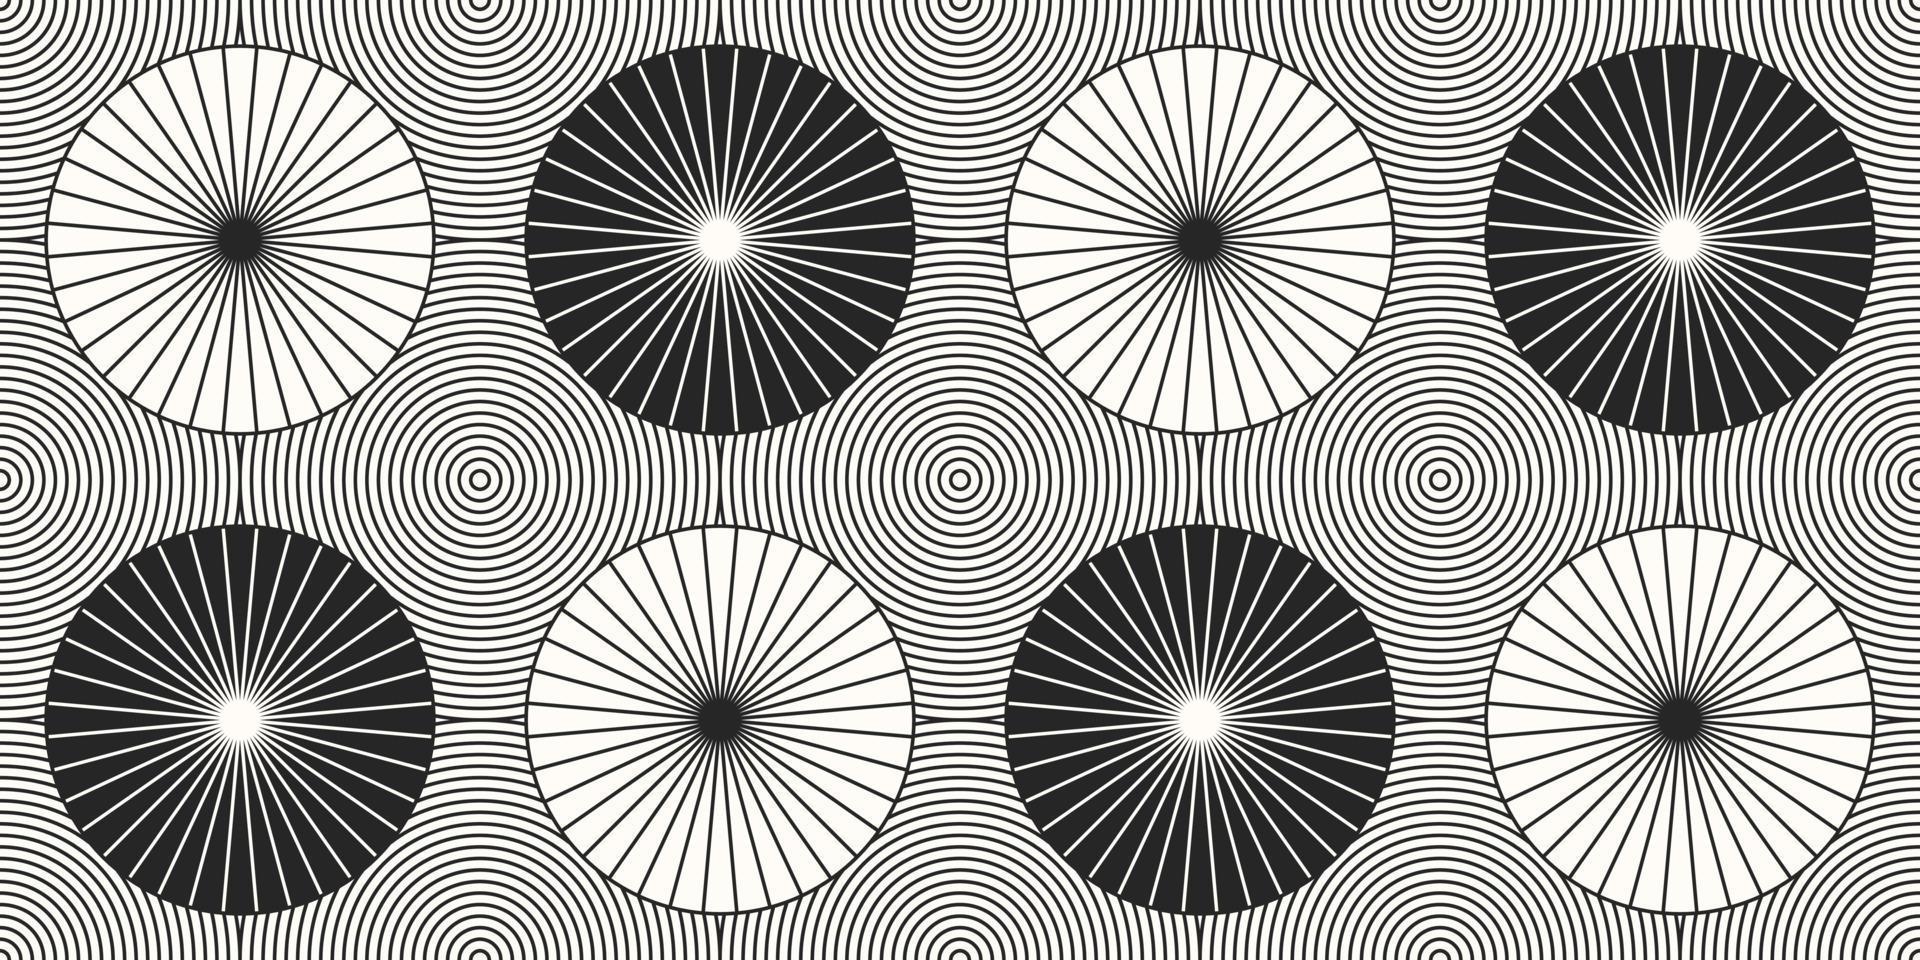 design de círculo abstrato geométrico padrão sem emenda. ilustração vetorial. eps10 vetor